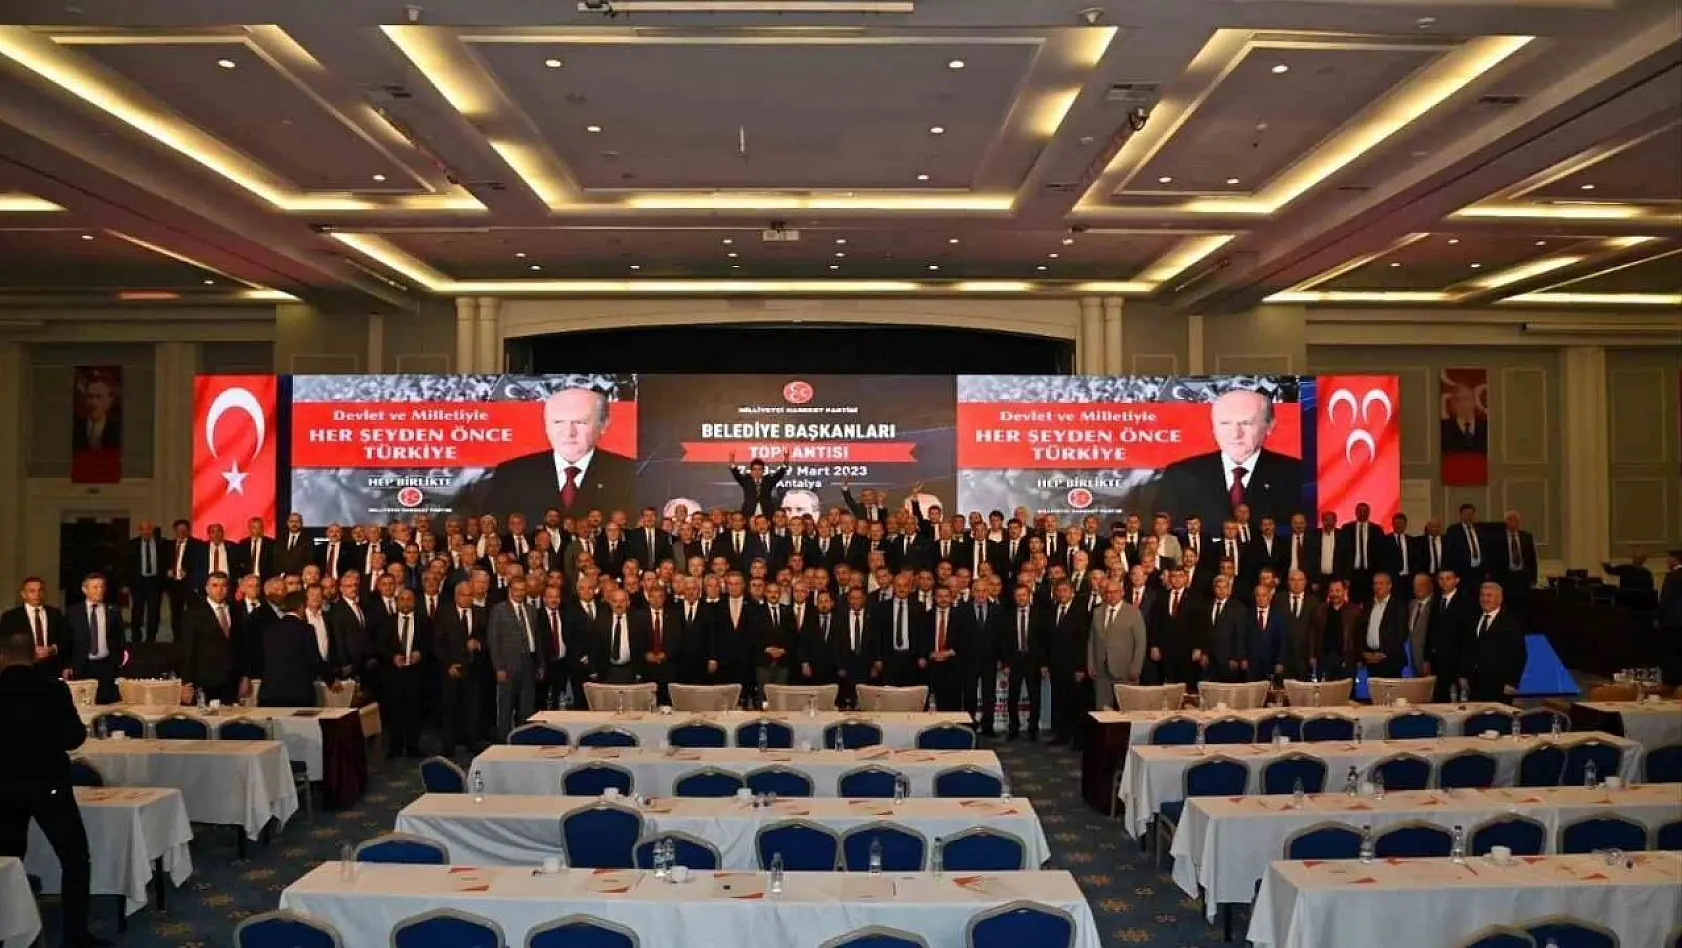 Belediye Başkanları Toplantısı'nda Manisa Büyükşehir örnek gösterildi